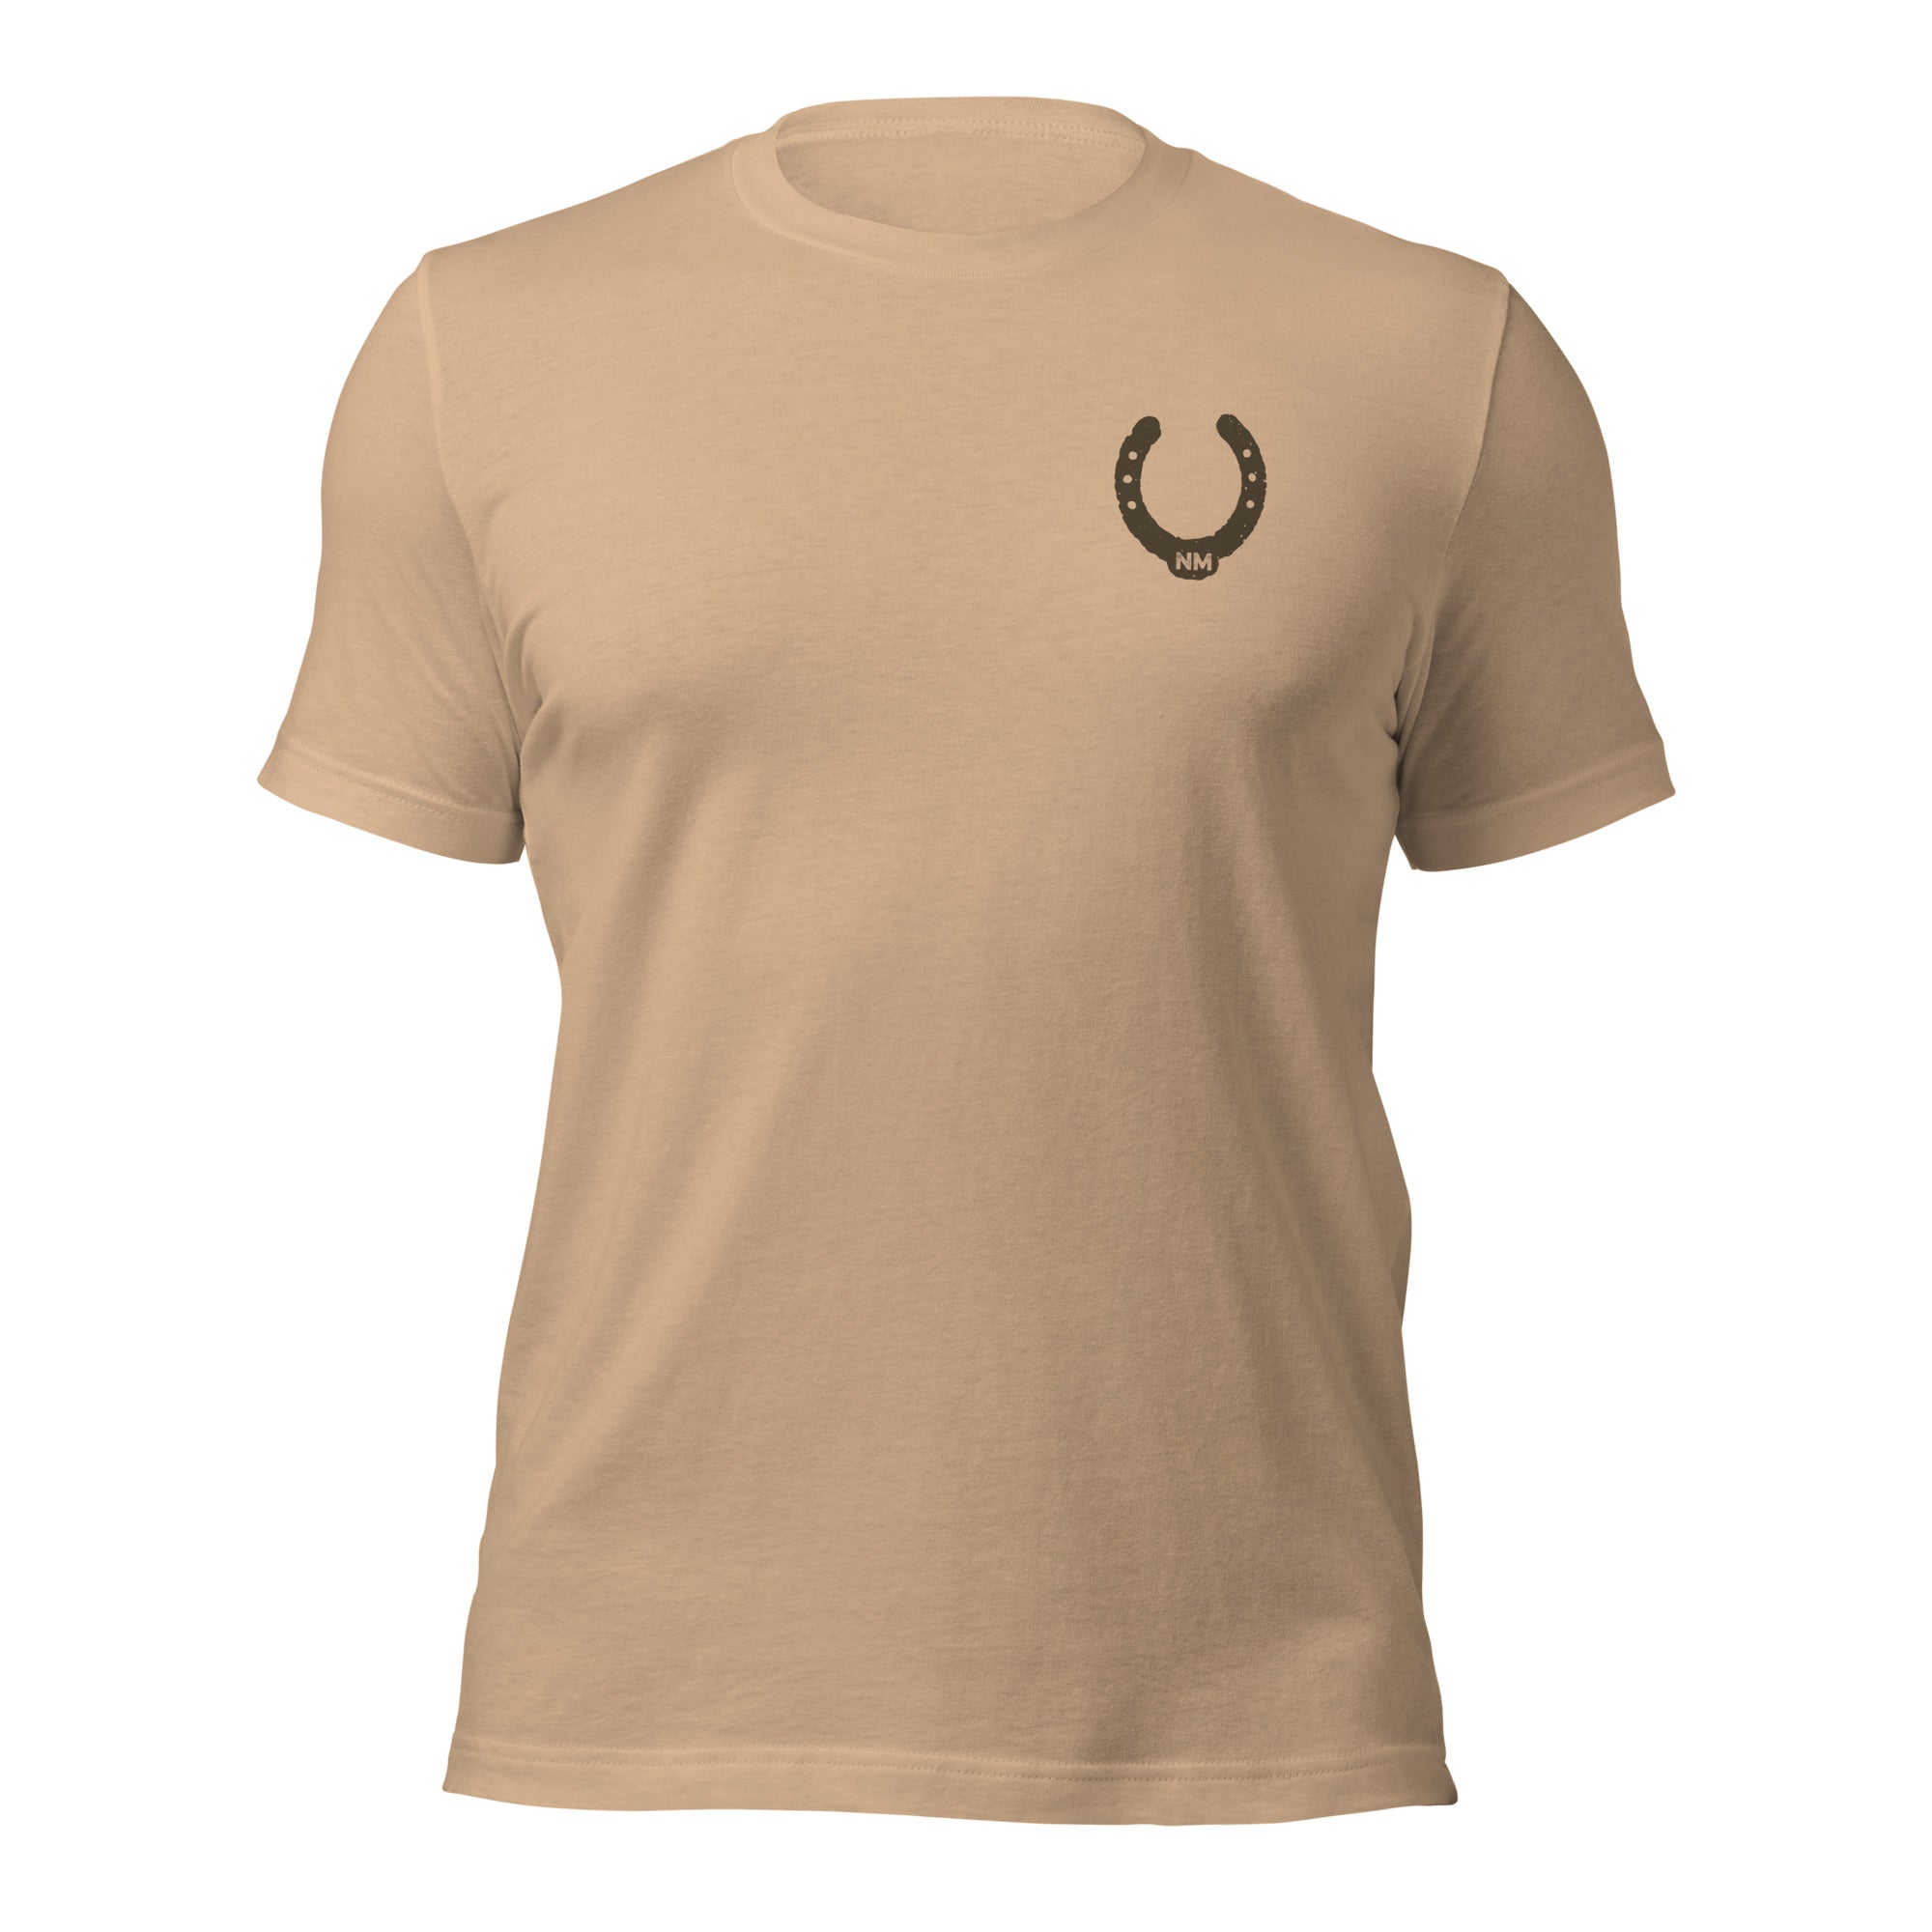 unisex-staple-t-shirt-tan-front-65ce97aa0a157.jpg